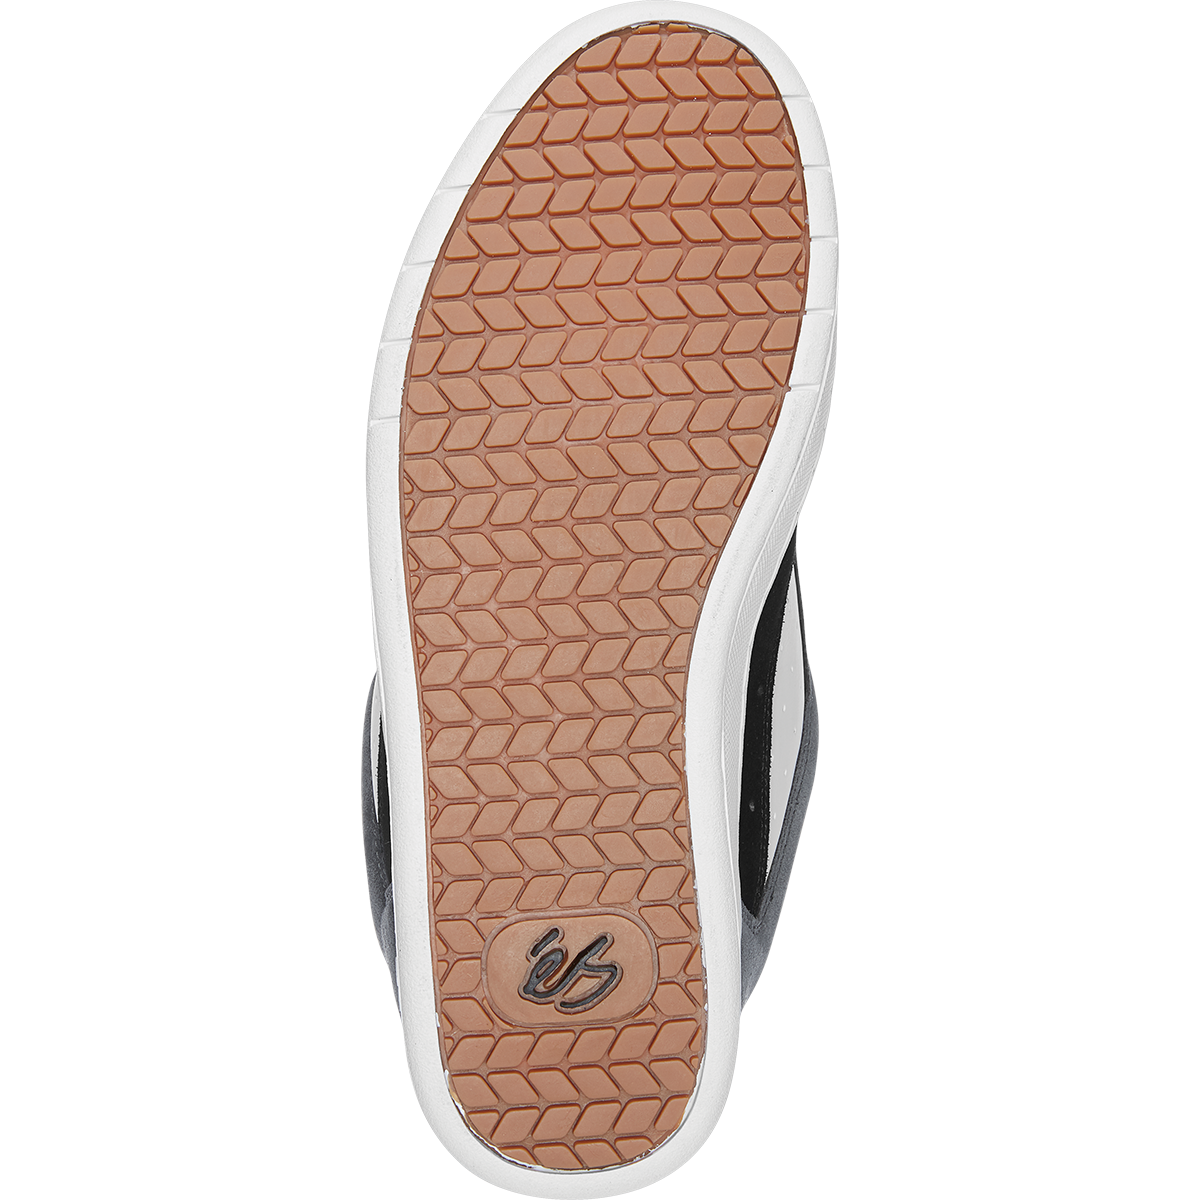 Black/Silver OG Accel eS Skateboarding shoe Bottom